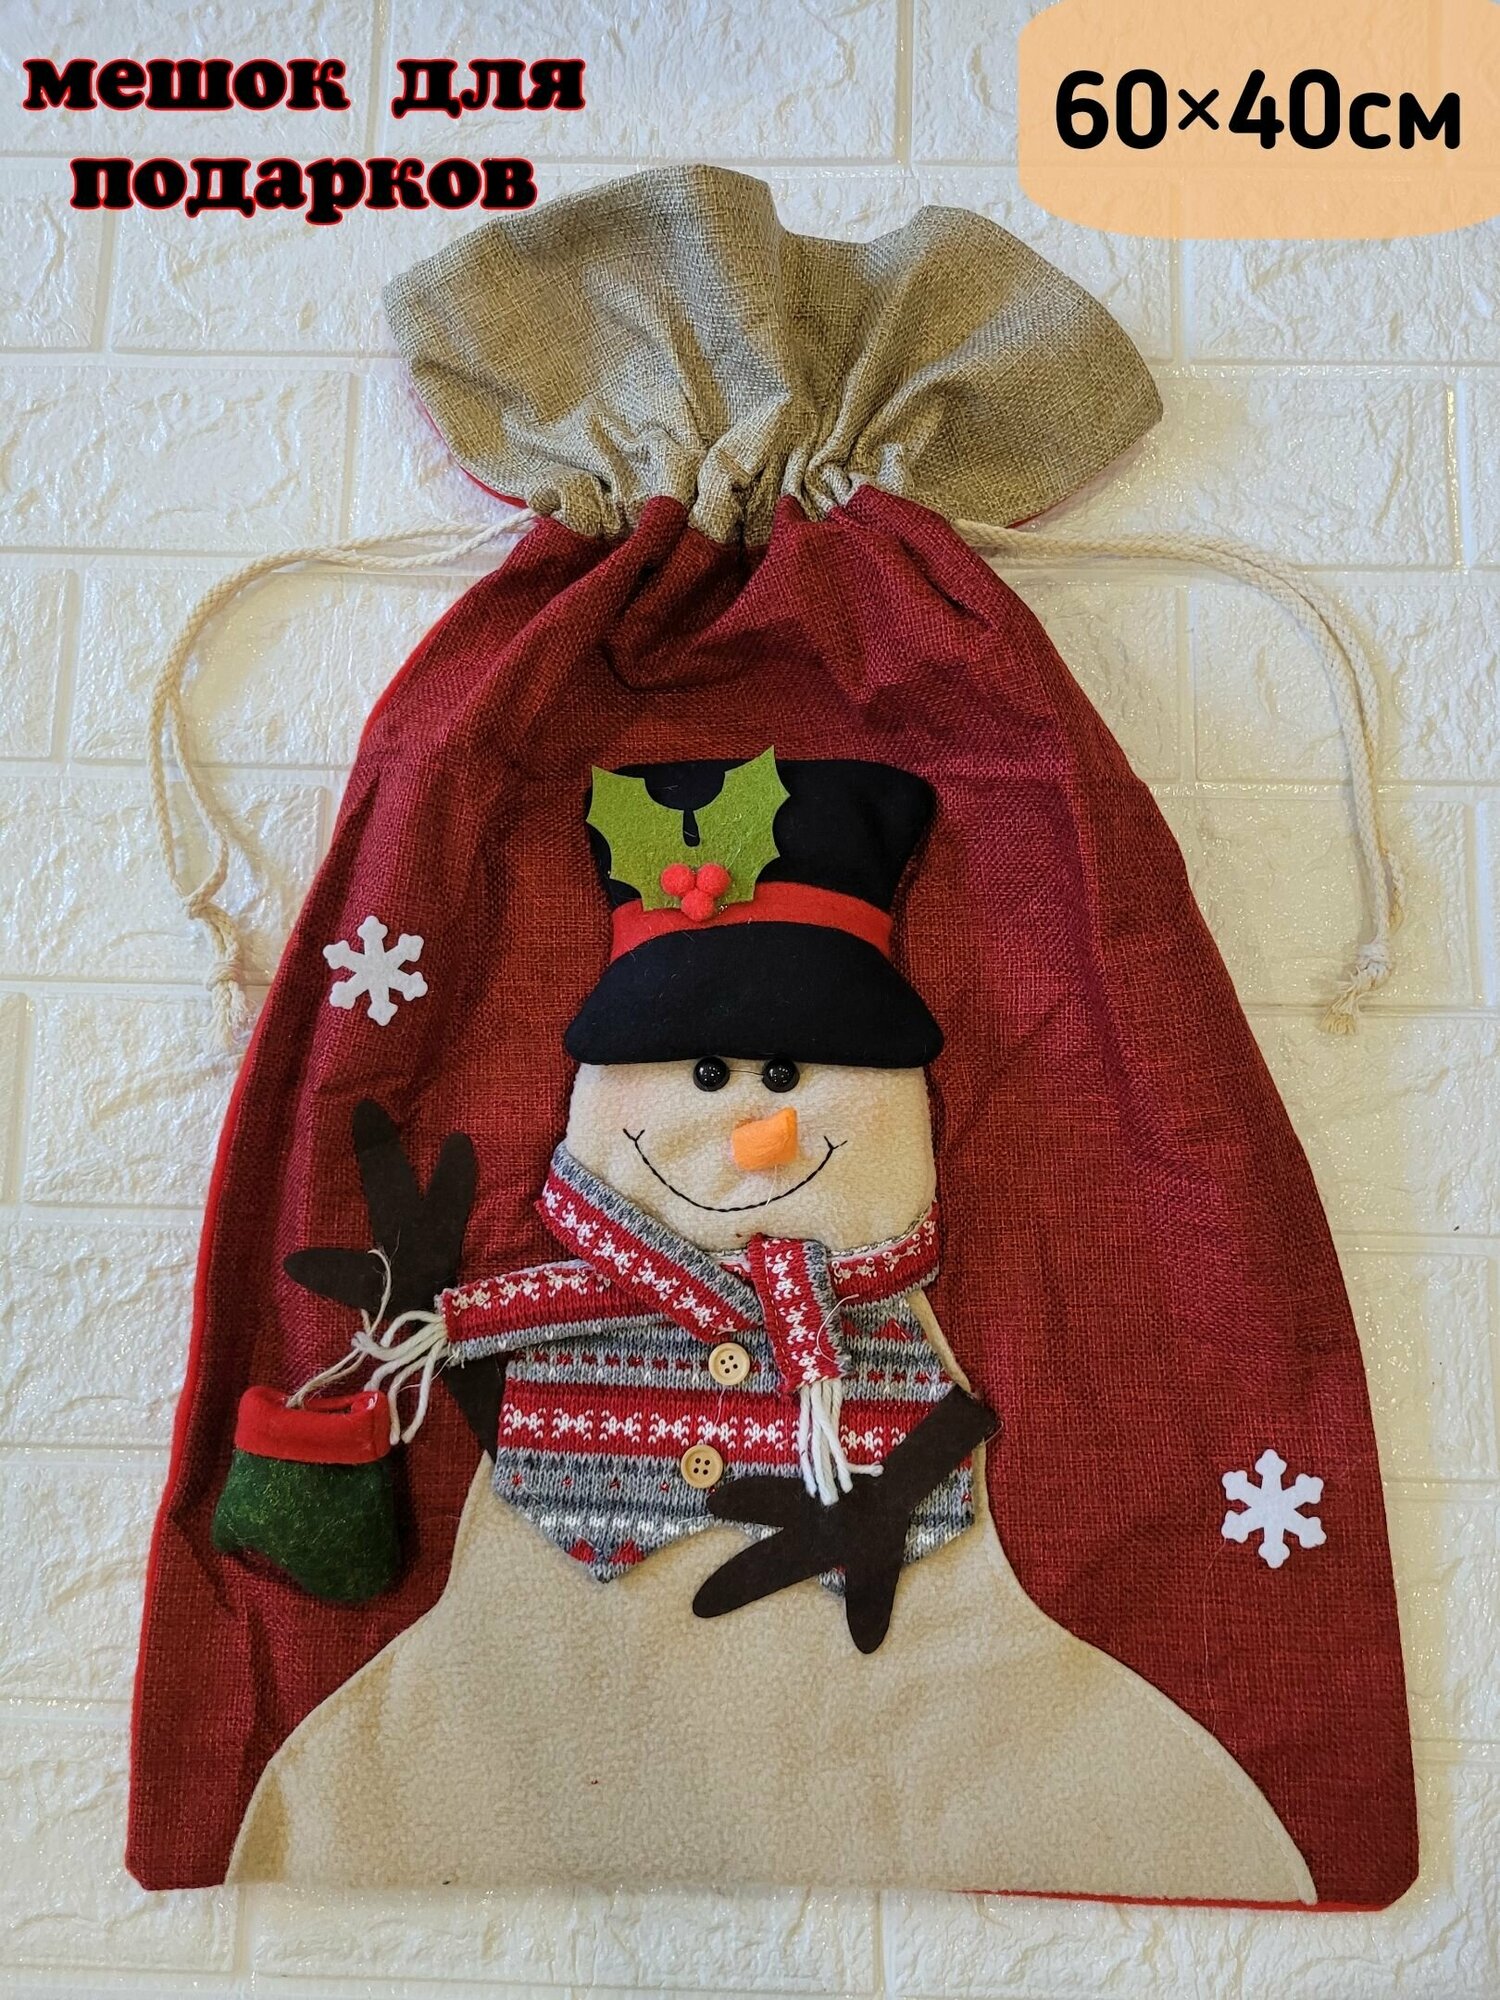 Новогодний мешок Деда Мороза для подарков "Снеговик" с аппликацией и завязками. Размер 60х40 см-1 штука